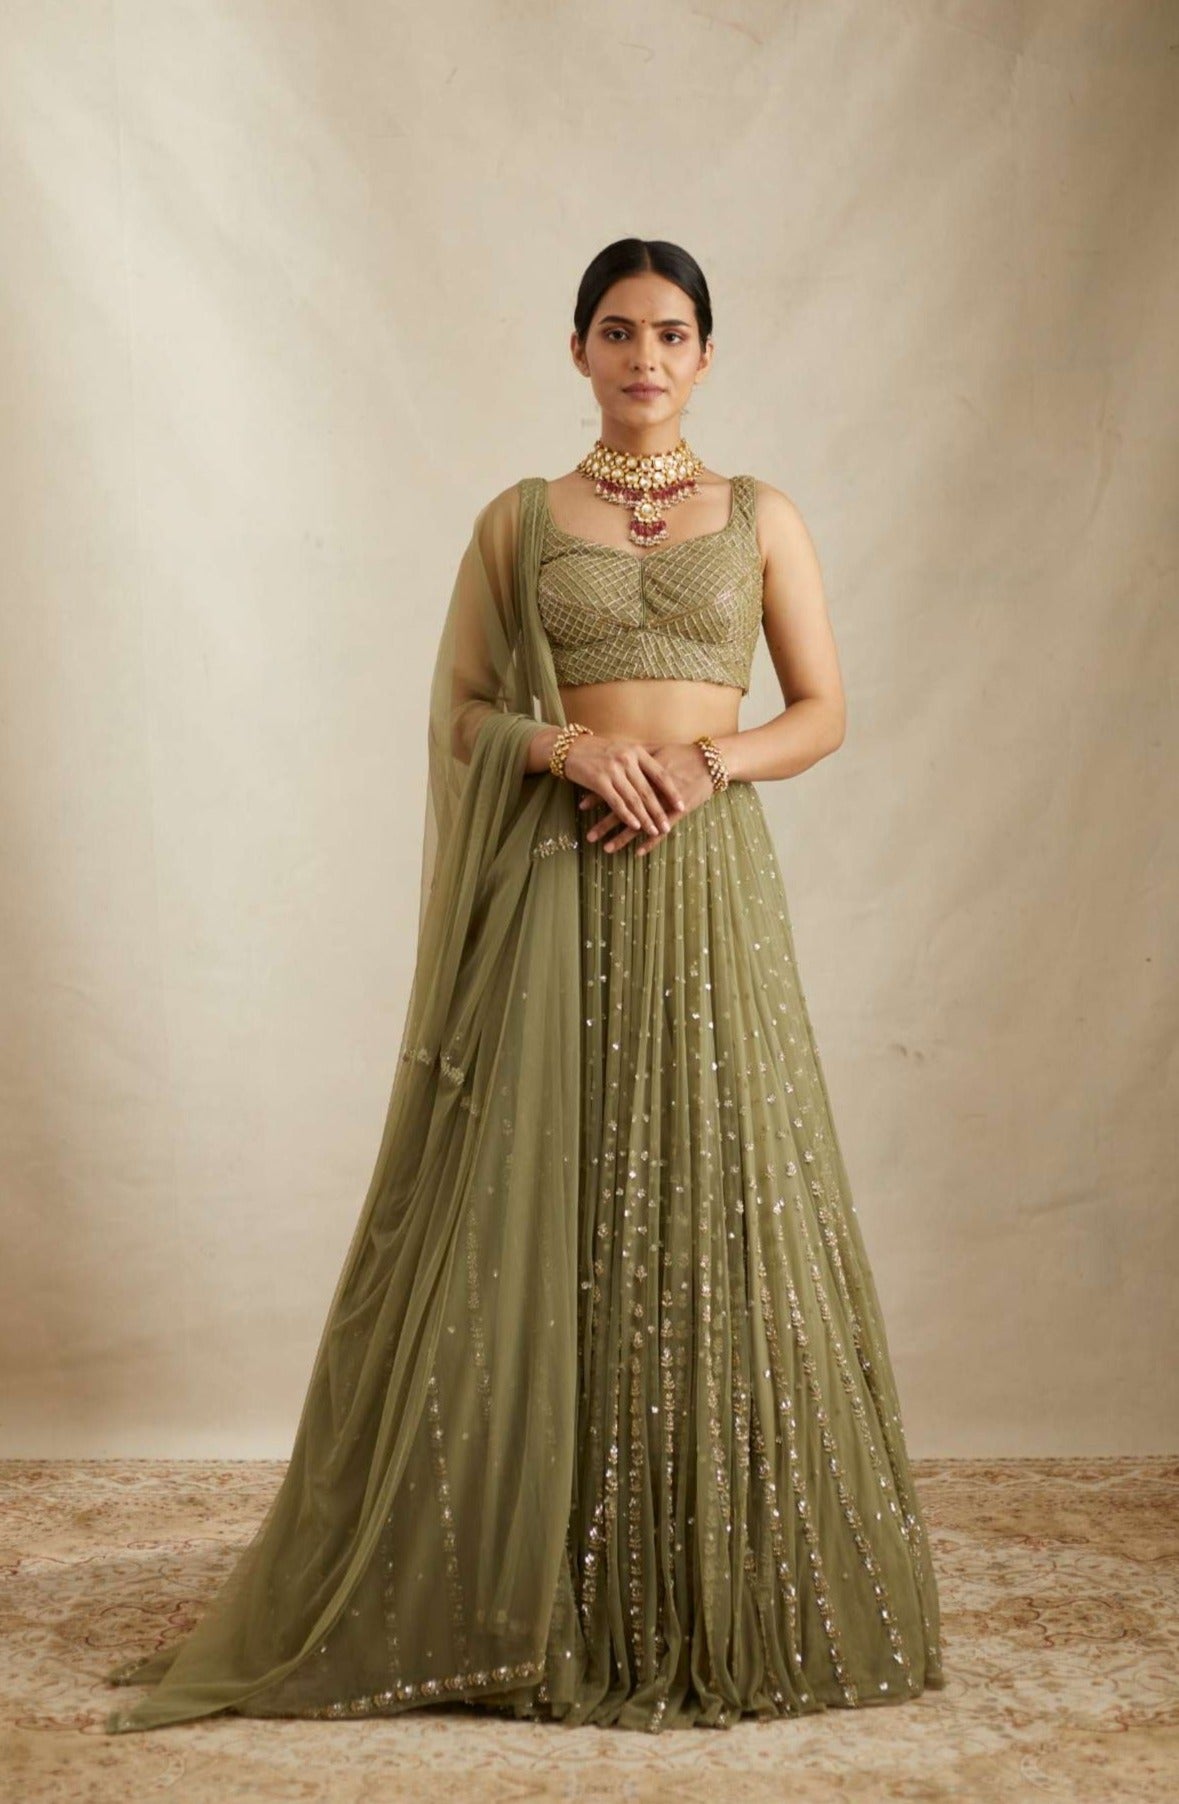 Indian Actress Kareena Kapoor Hot In Green dress | Indian designer outfits,  Designer dresses indian, Indian wedding dress